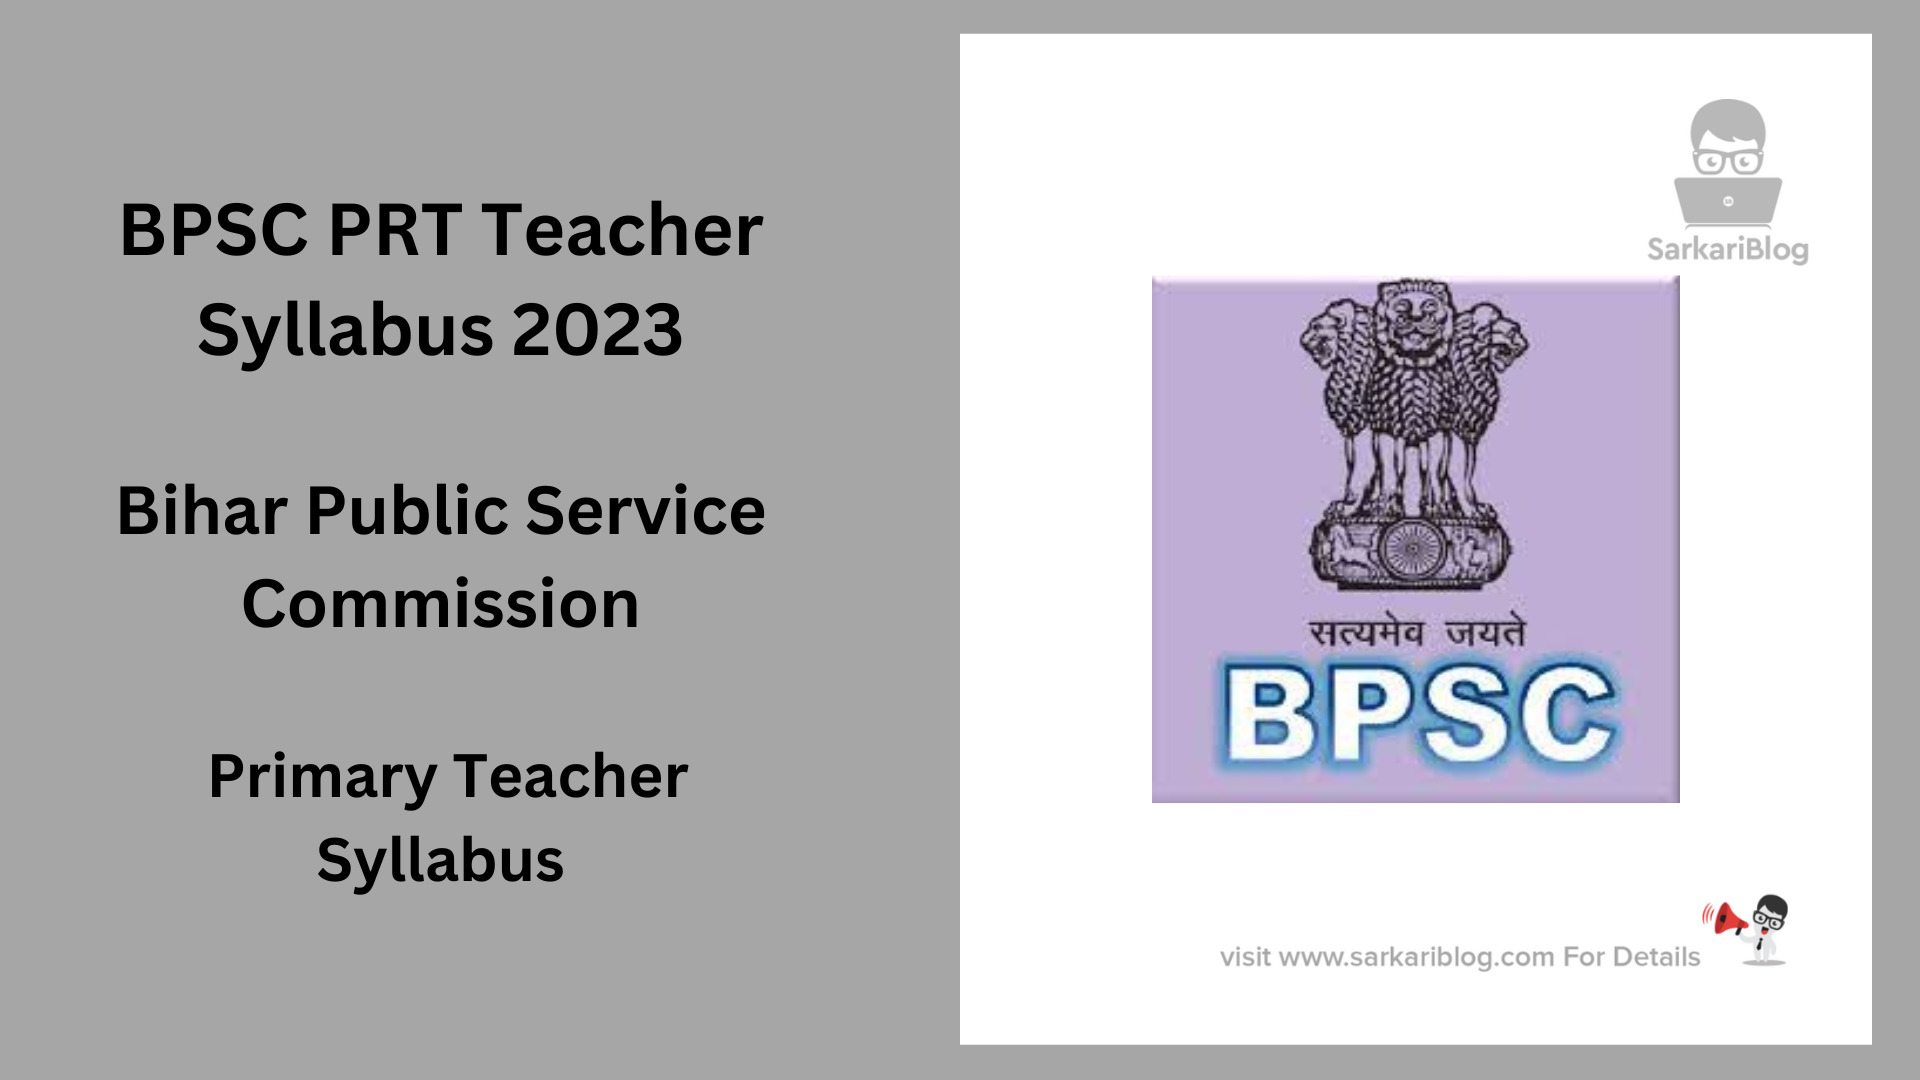 BPSC PRT Teacher Syllabus 2023